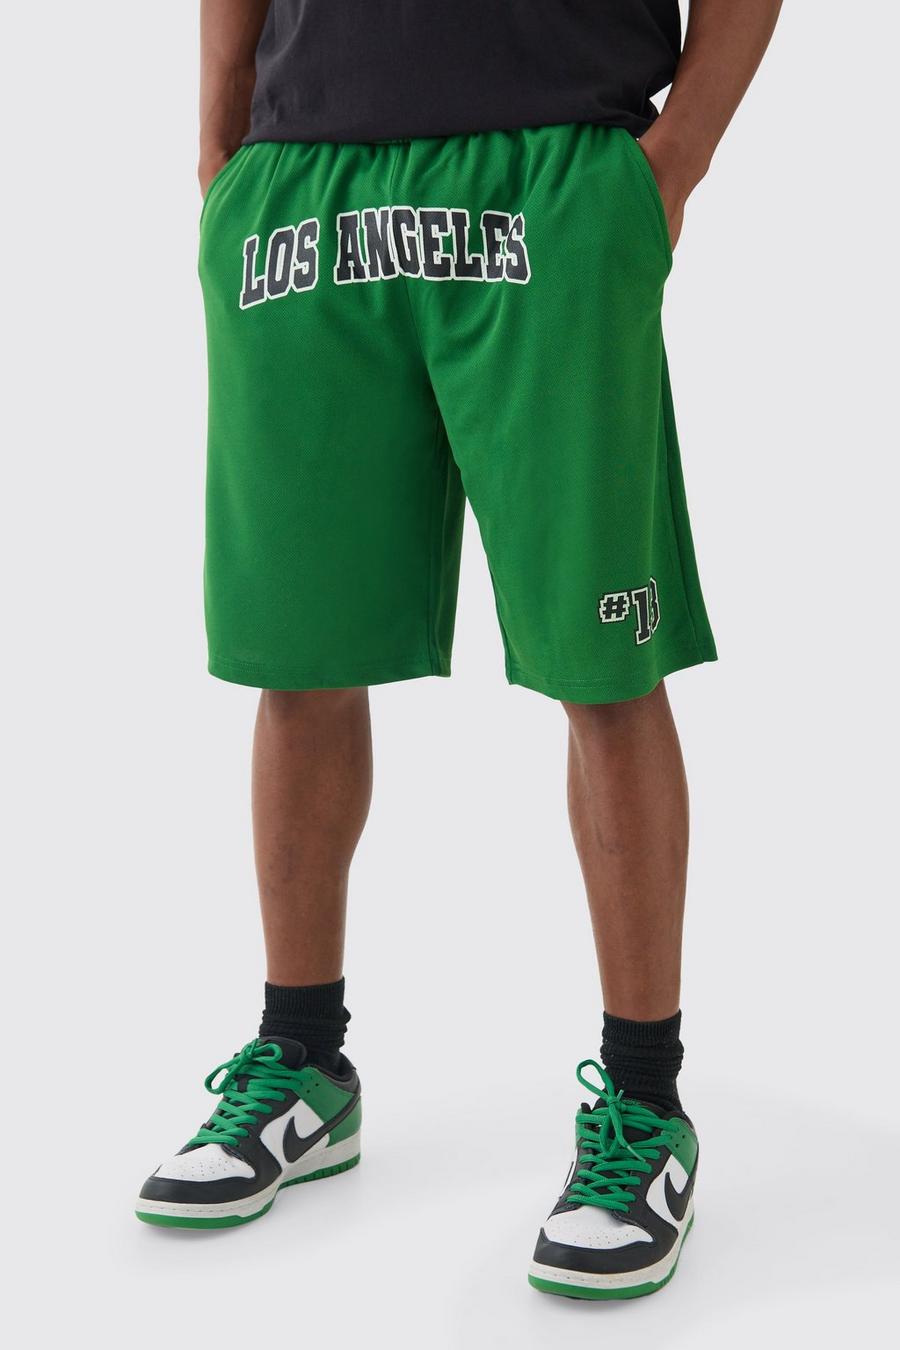 Pantaloncini lunghi da basket Los Angeles, Green image number 1